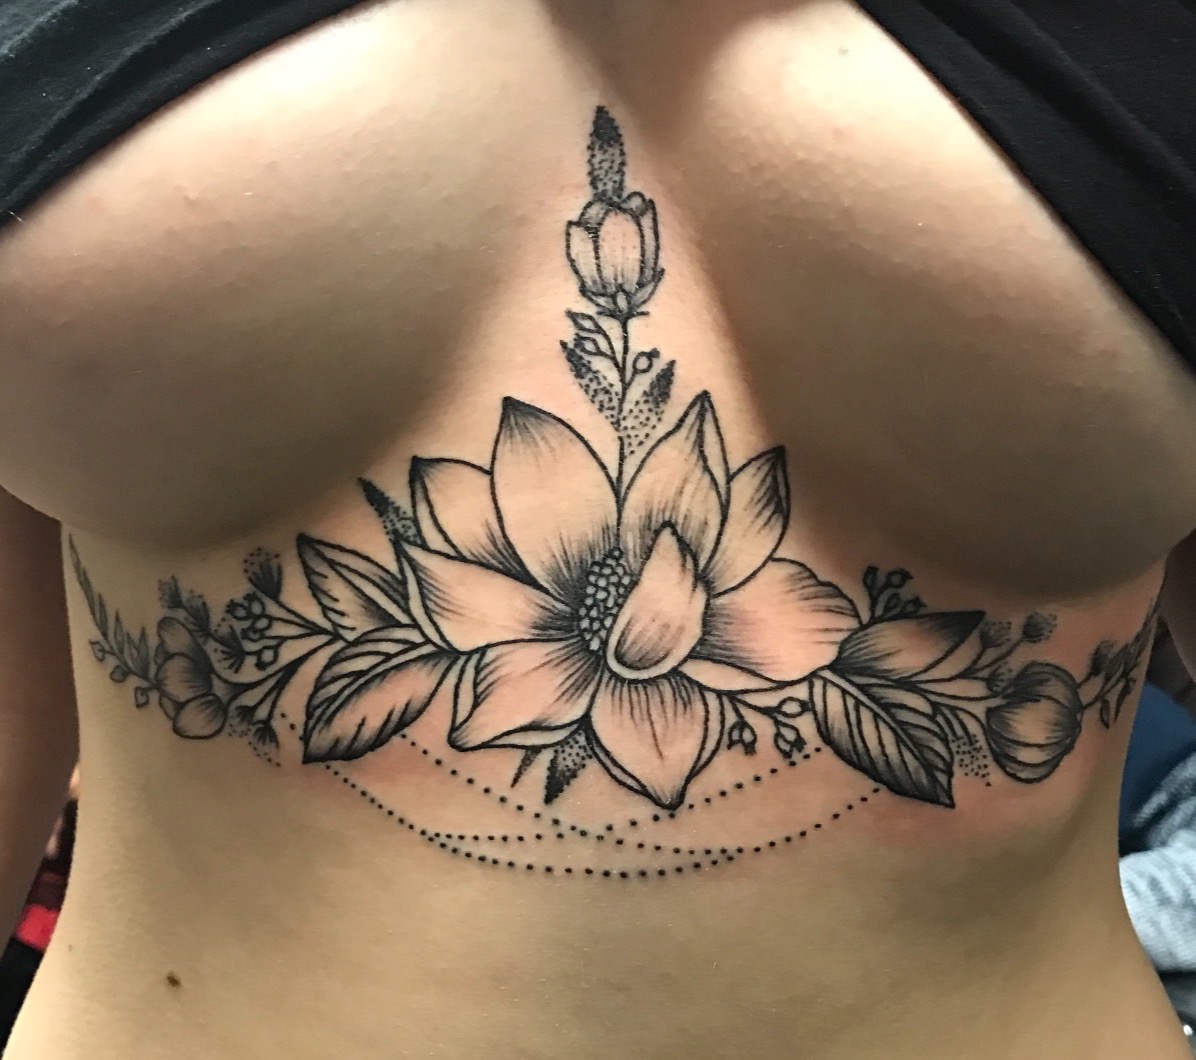 under boob tattoo, breast tattoo, flower tattoo, line tattoo, floral, breasts, tattoos, girls with tattoos, Johnny calico, tattoo artist Michigan, Michigan tattooers